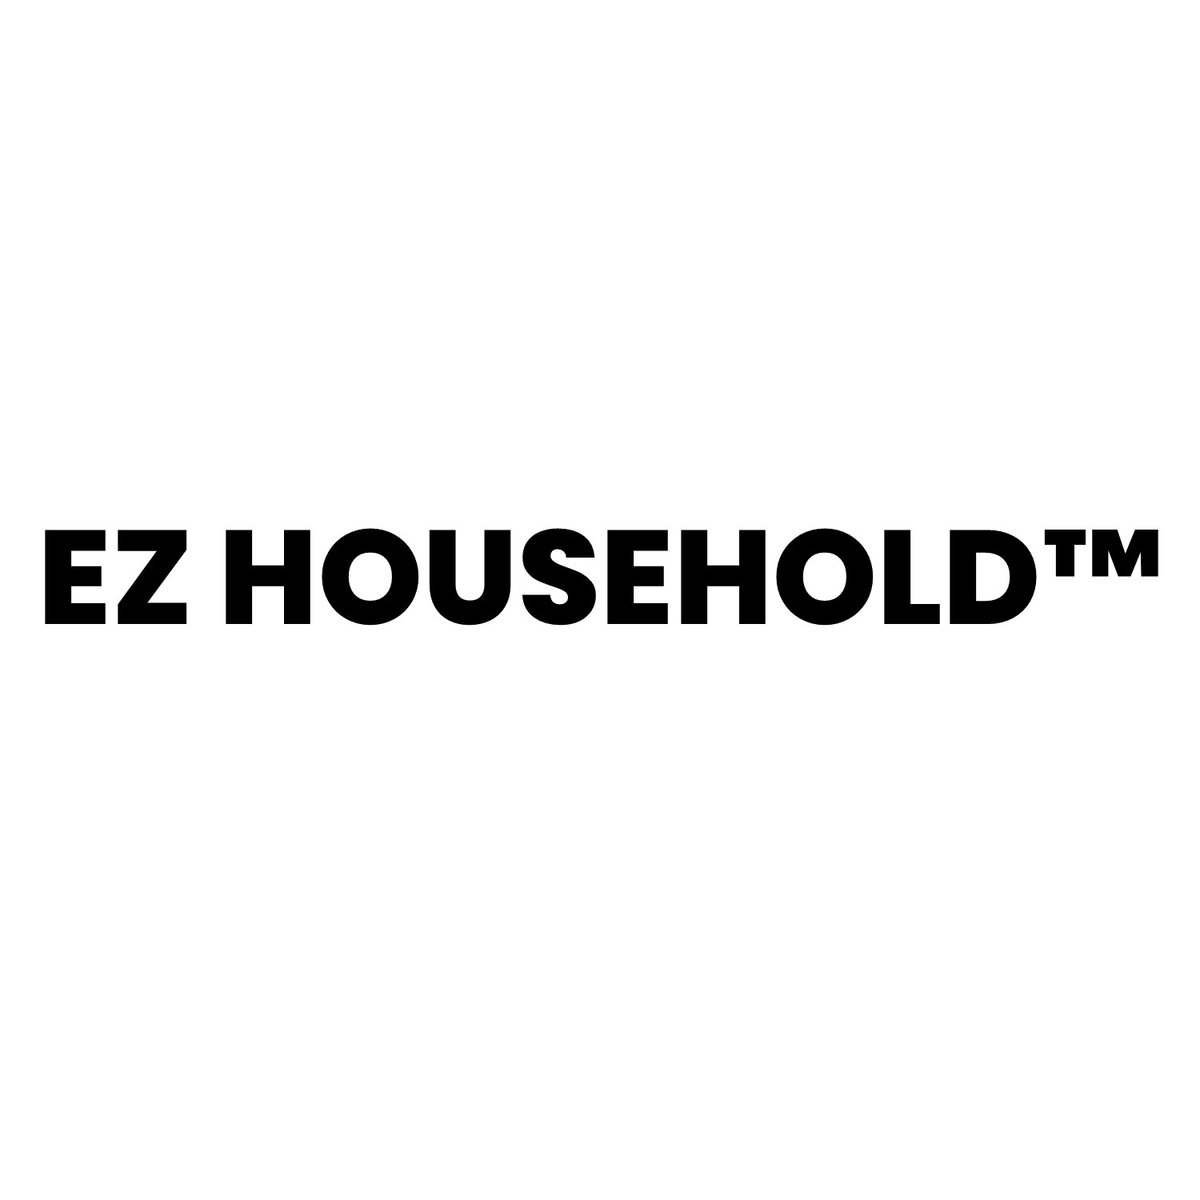 EZ Household™